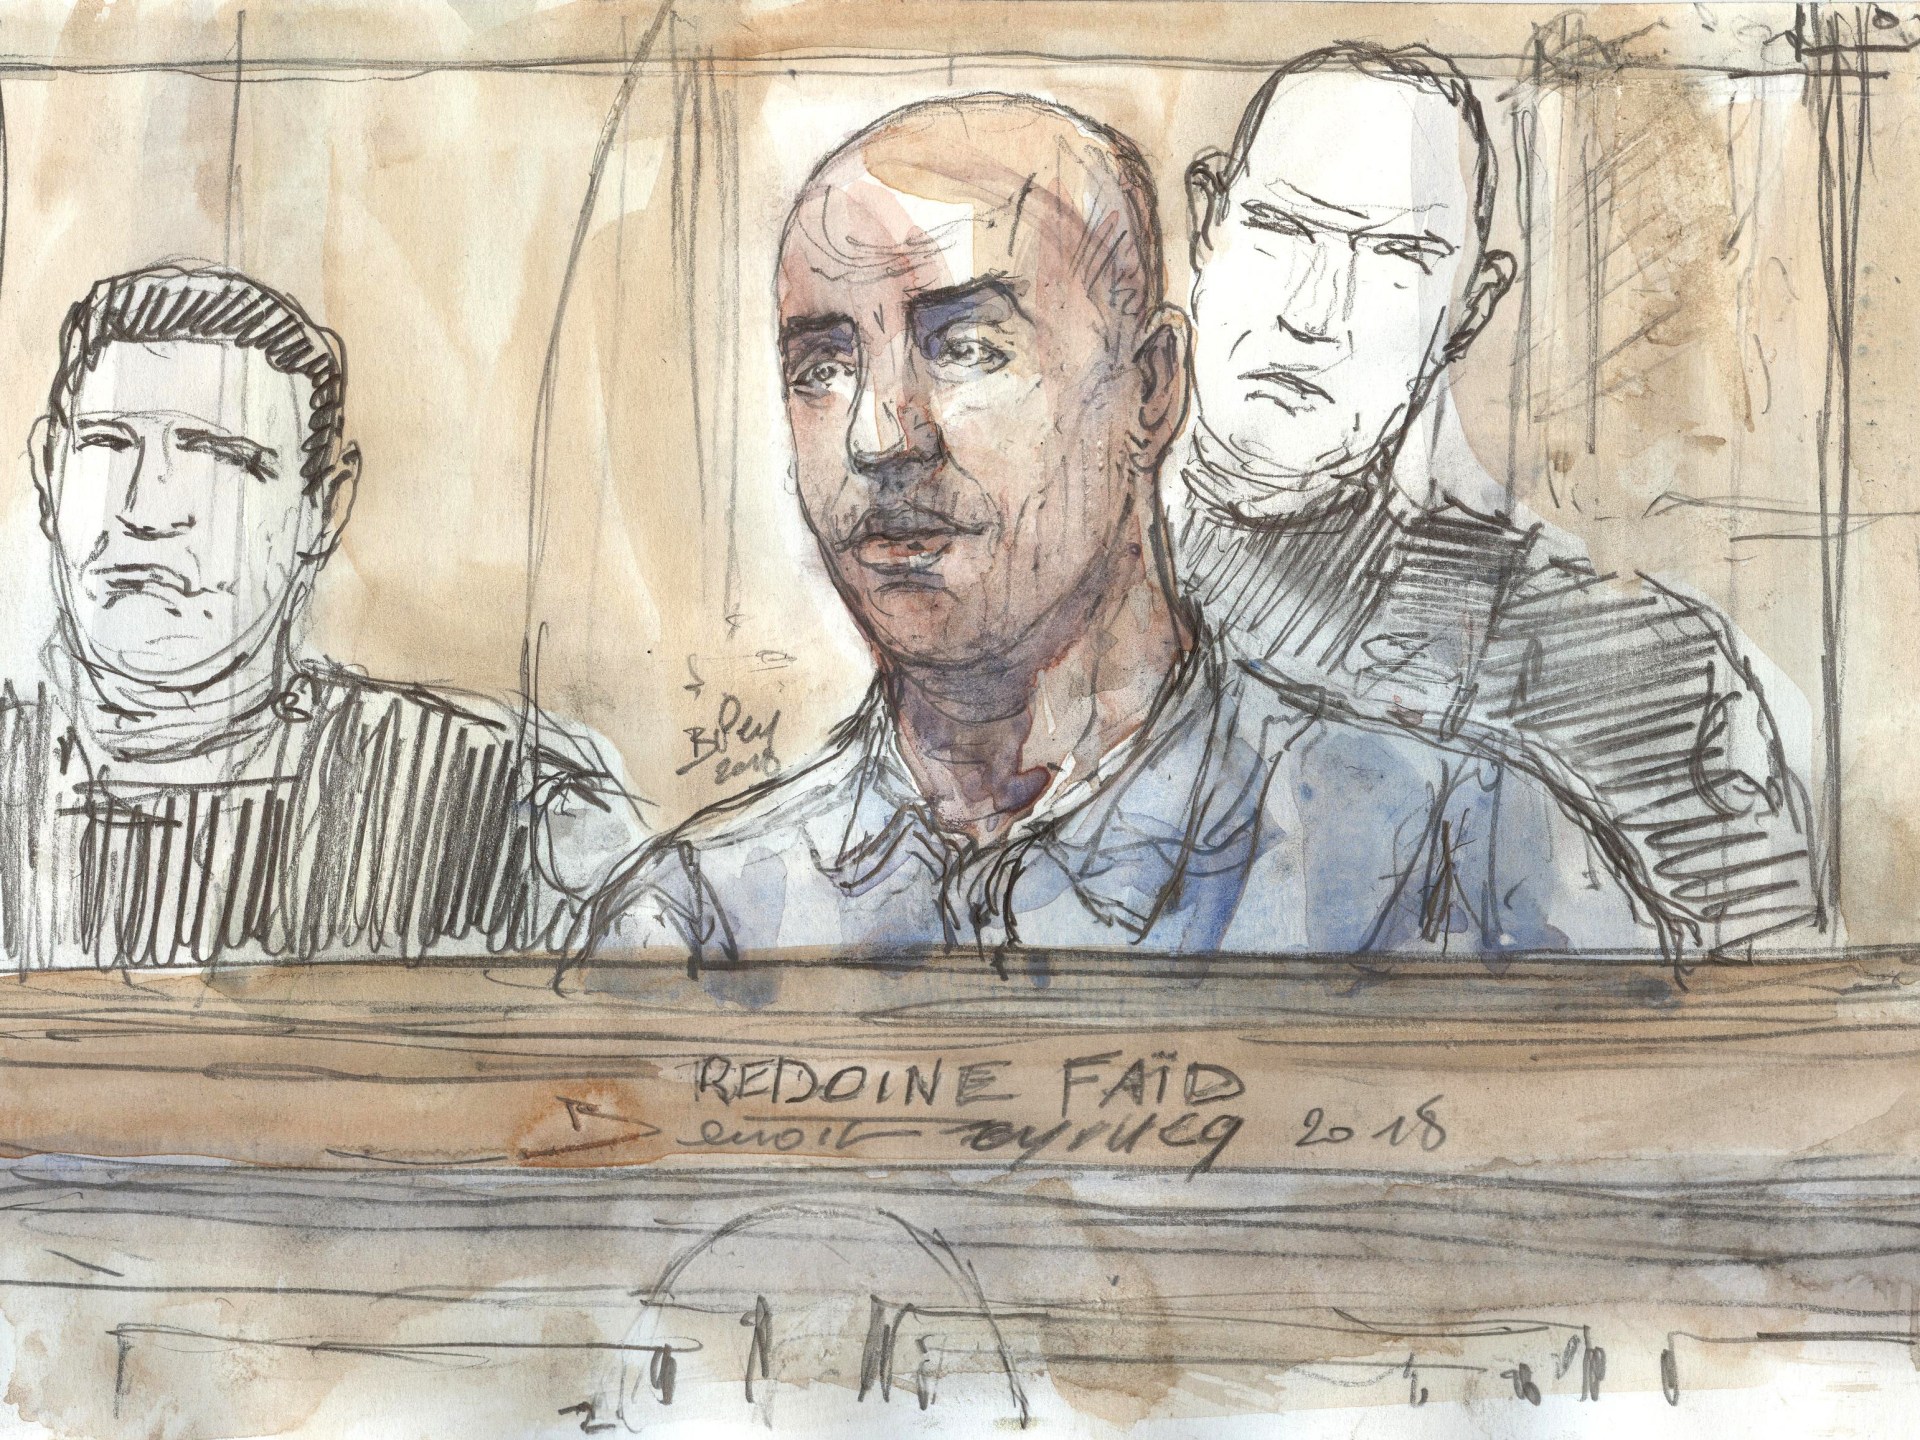 Les derniers secrets entourant l’évasion du voleur professionnel Radwan Fayed d’une prison en France